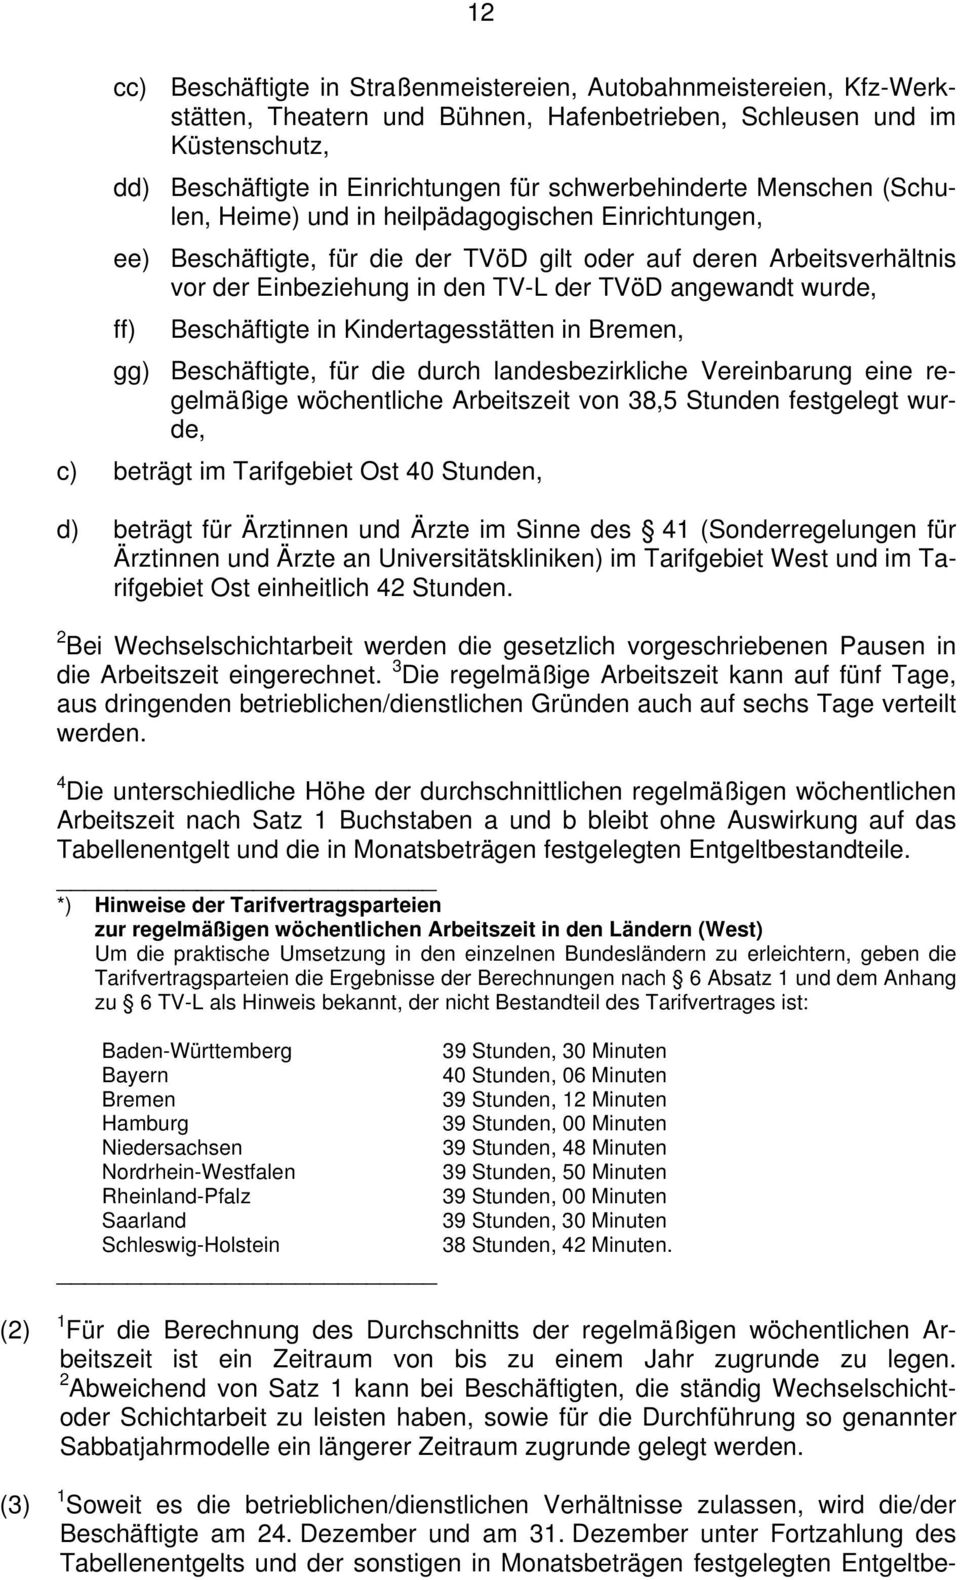 angewandt wurde, ff) Beschäftigte in Kindertagesstätten in Bremen, gg) Beschäftigte, für die durch landesbezirkliche Vereinbarung eine regelmäßige wöchentliche Arbeitszeit von 38,5 Stunden festgelegt